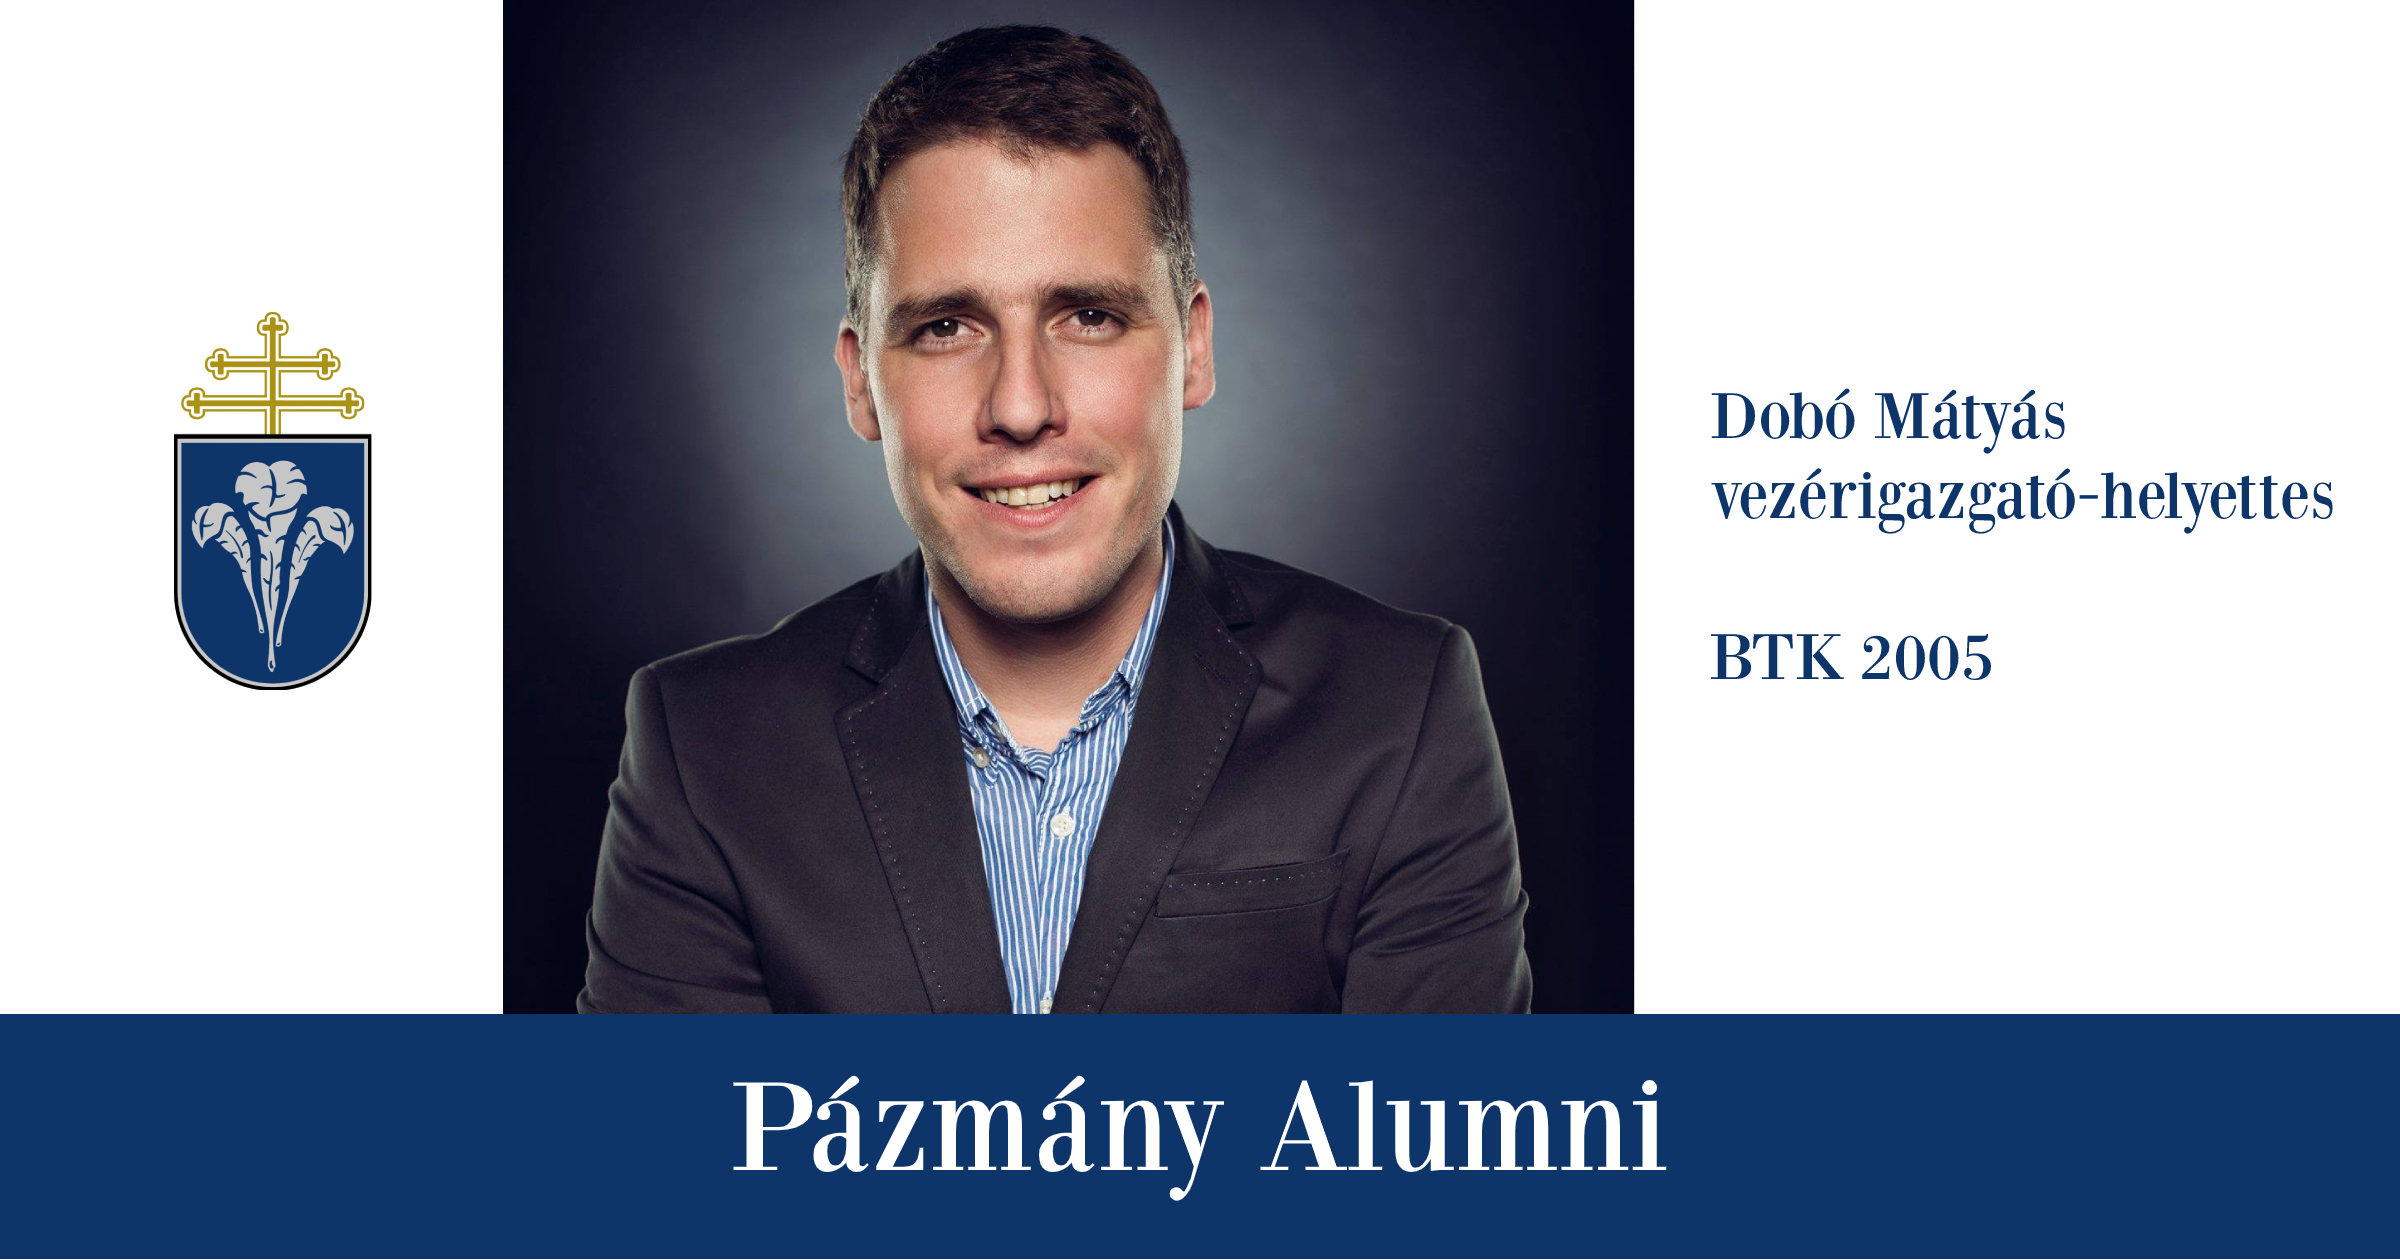 Pázmány Alumni: interjú Dobó Mátyással, a BTK egykori hallgatójával